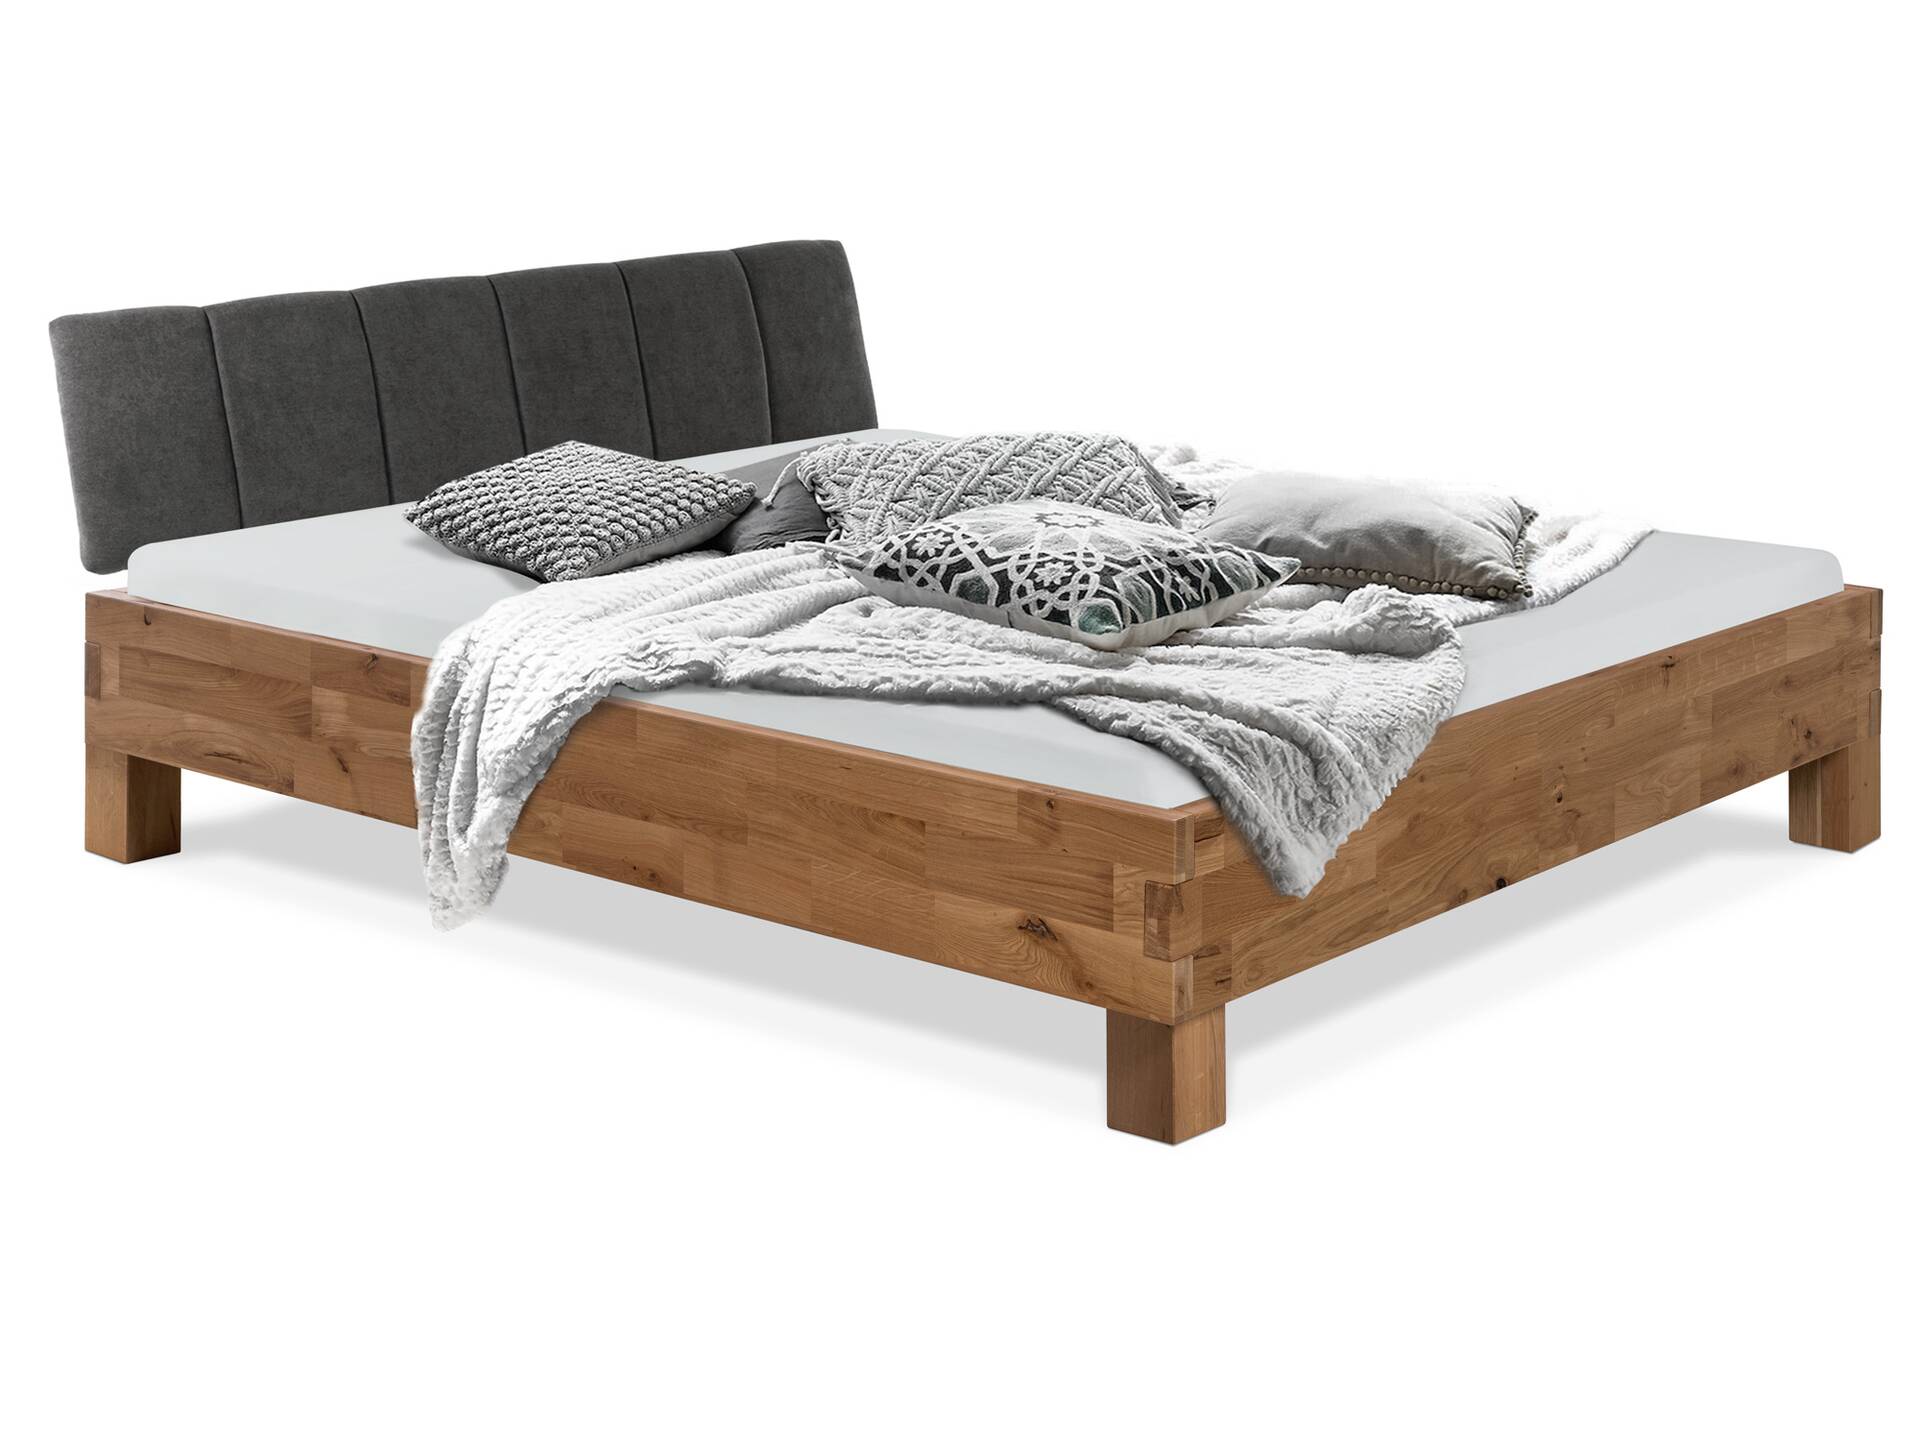 CORDINO 4-Fuß-Bett aus Eiche mit Polster-Kopfteil, Material Massivholz 120 x 200 cm | Eiche unbehandelt | Stoff Anthrazit mit Steppung | gebürstet